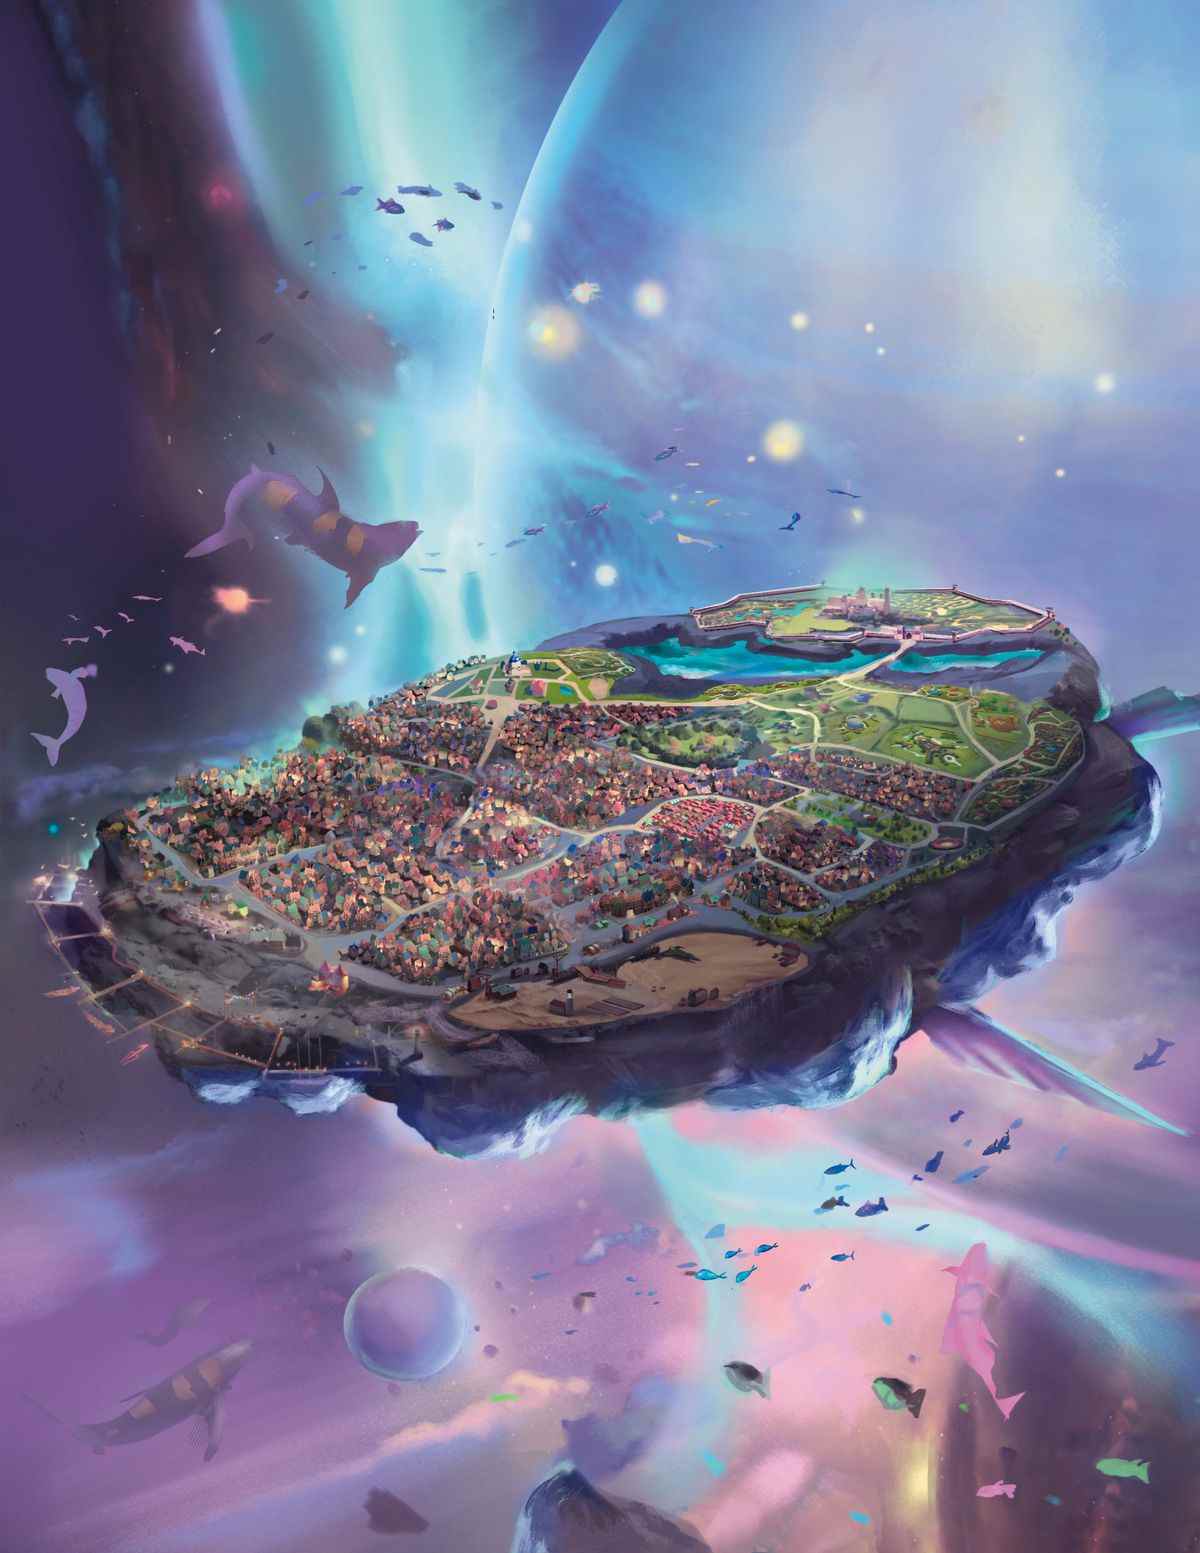 Une parcelle de terre violette sombre - avec des ailes - flotte dans un vide d'encre à l'extérieur d'une sphère de cristal.